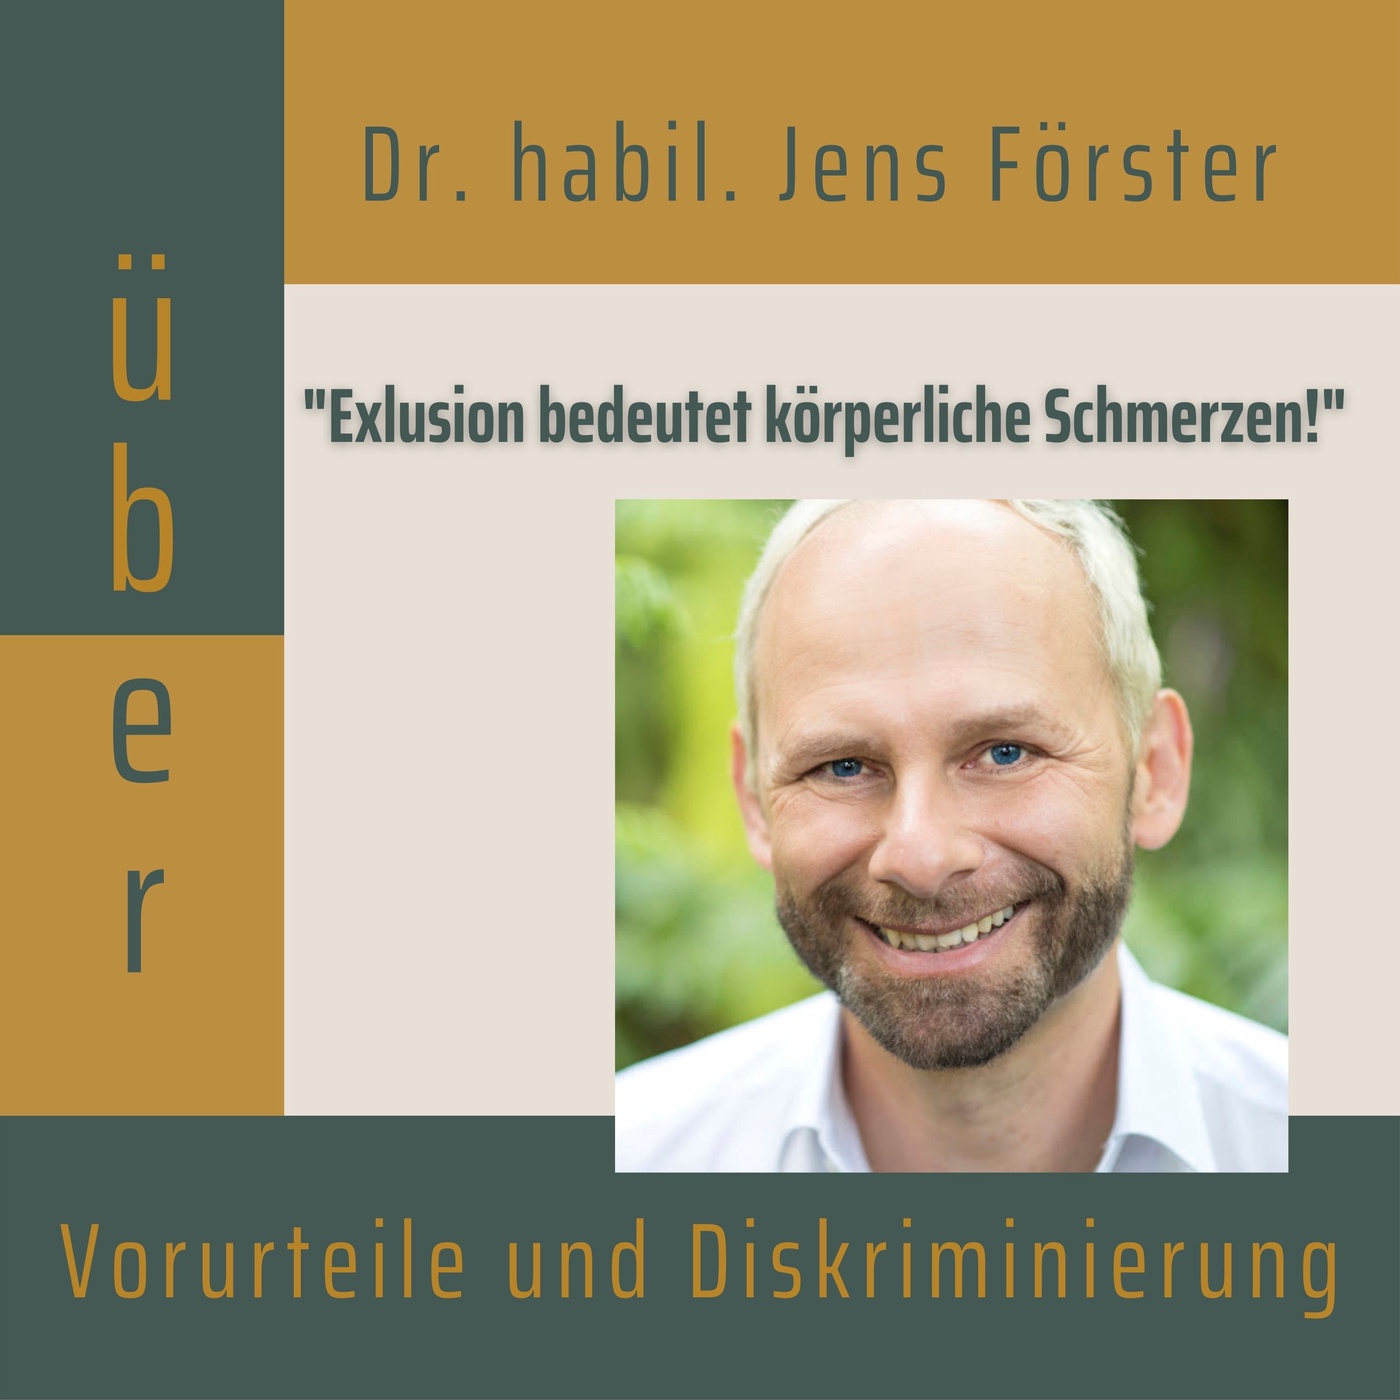 Folge 004: Dr. habil. Jens Förster über Vorurteile und Diskriminierung